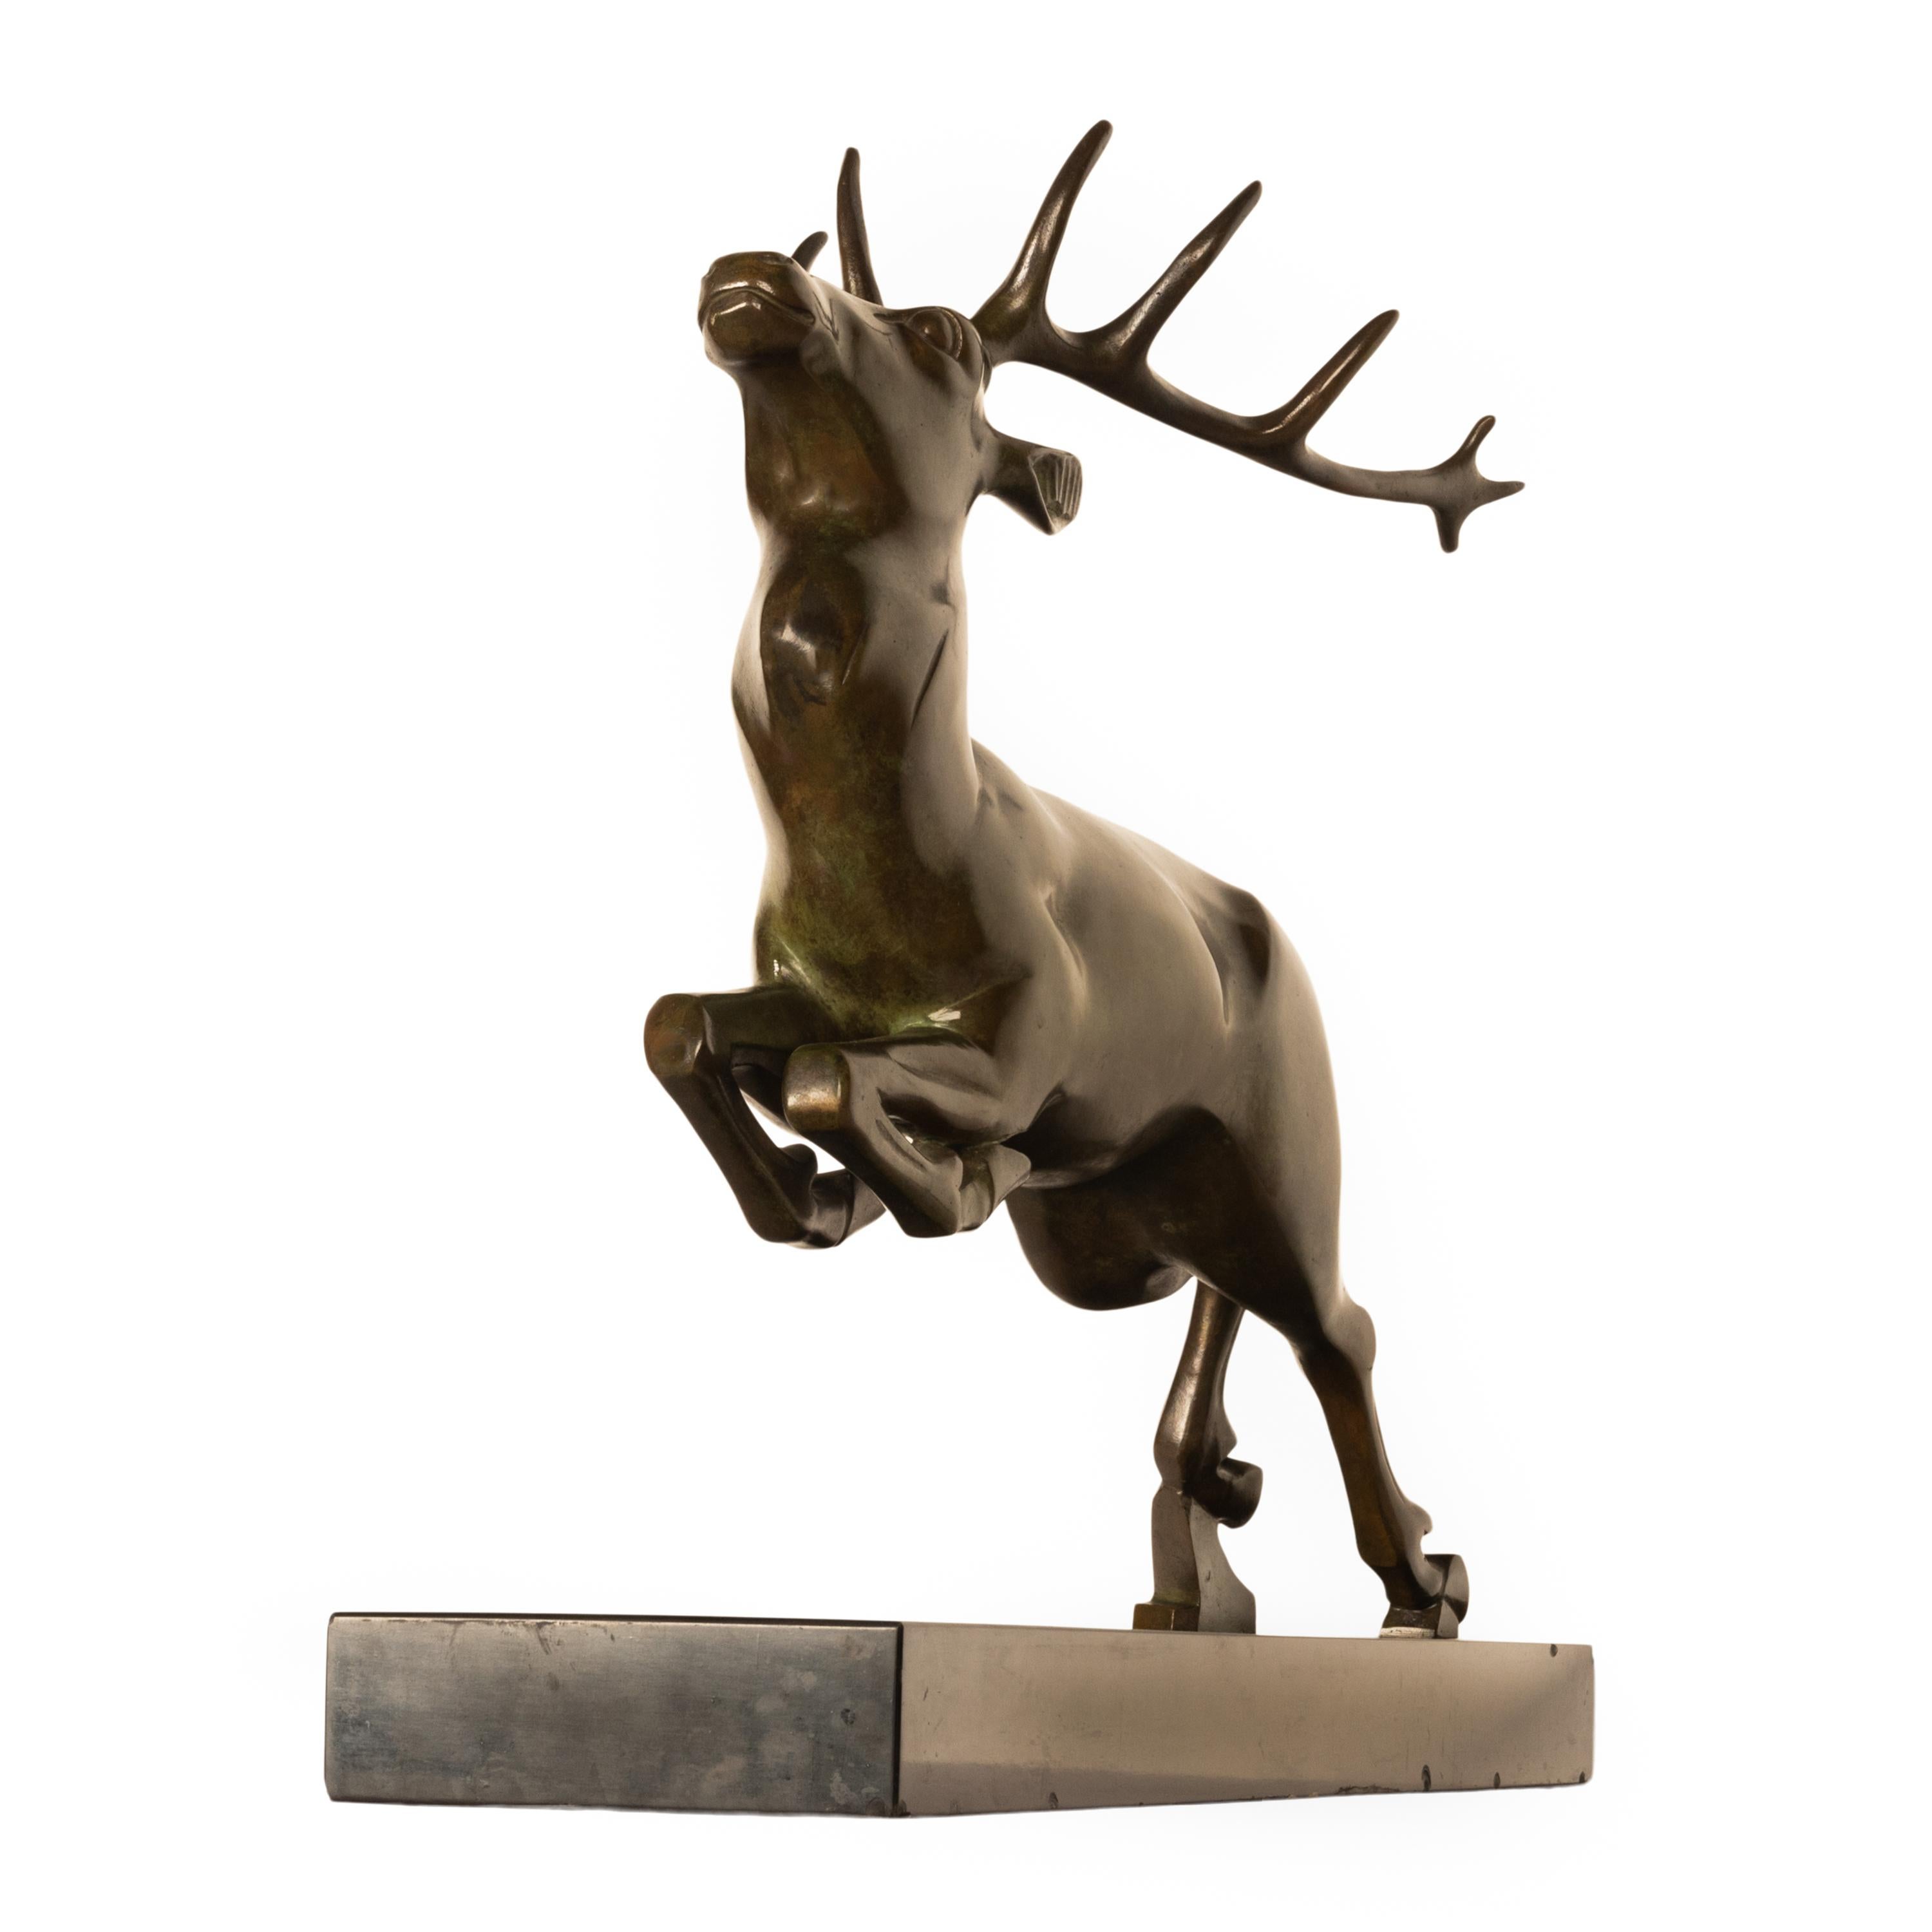 Eine schöne und große antike französische Art Deco Bronzeskulptur/Statue eines springenden Hirsches, von Georges H. Laurent (1880-1940), um 1925.
Georges H. Laurent war bekannt für seine Tierdarstellungen und diese Bronze ist ein eindrucksvolles